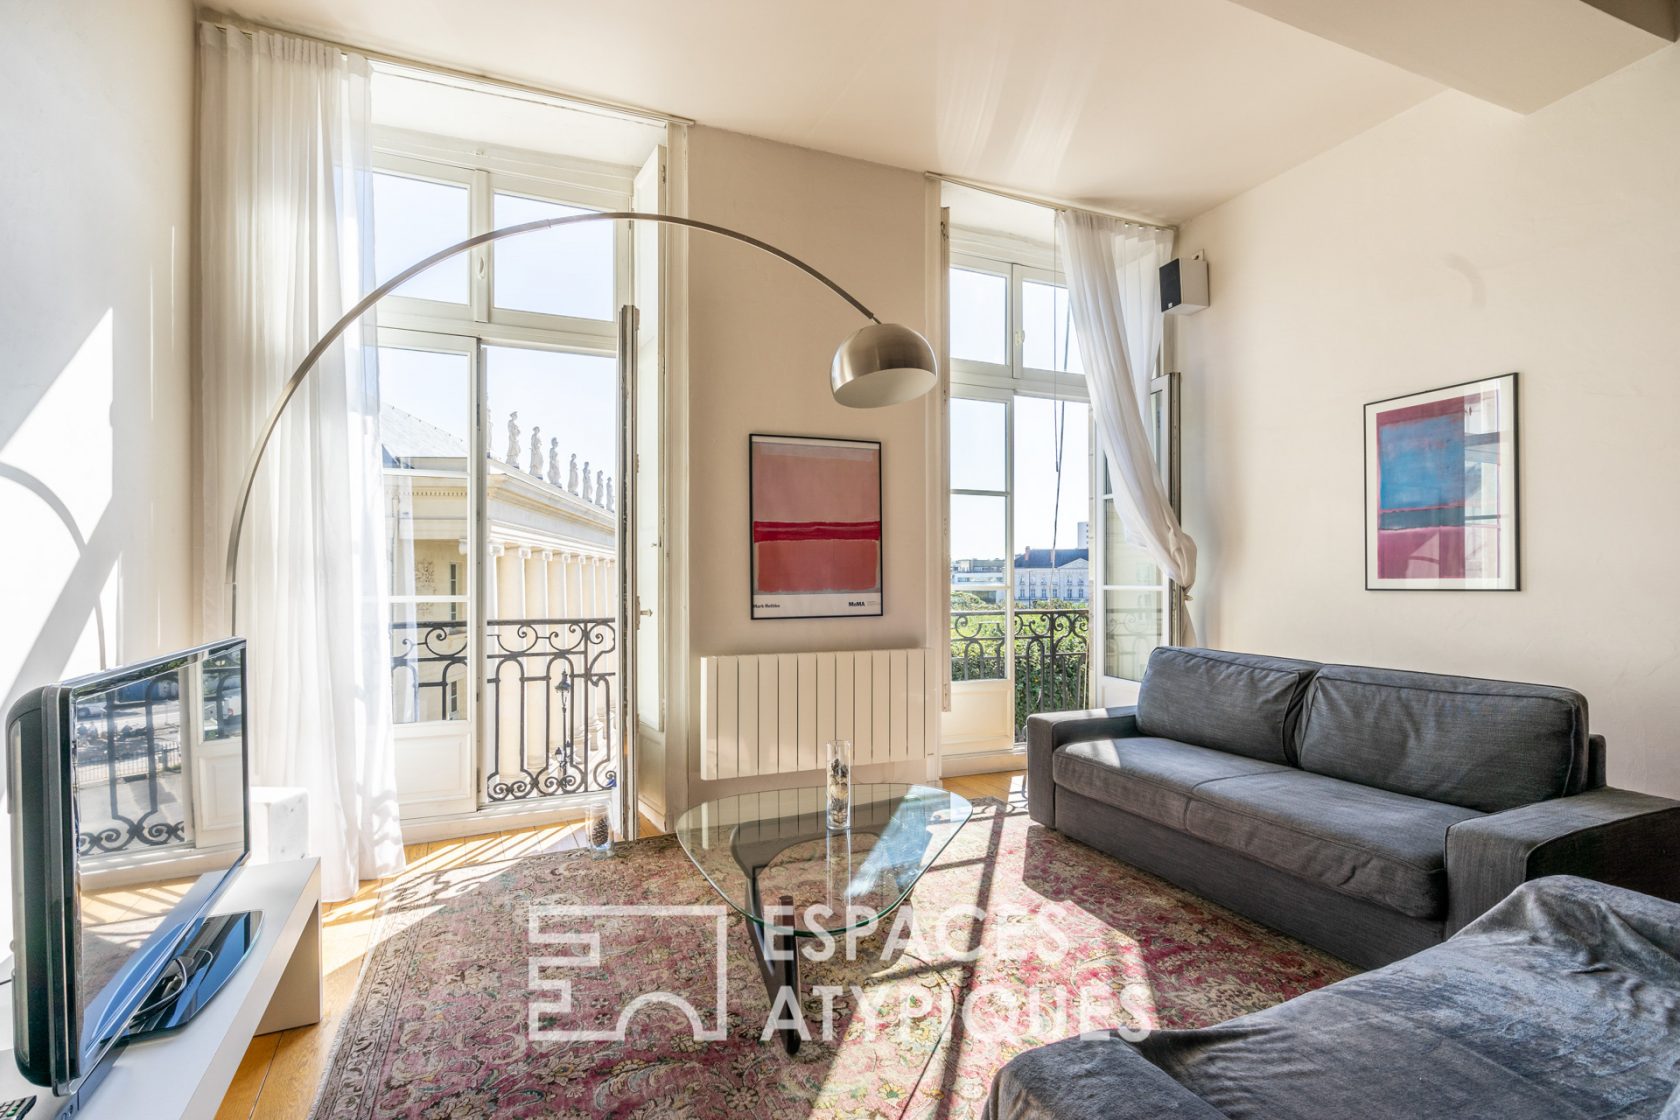 Déjà Loué – Appartement meublé et rénové de 65 m², hyper-centre de Nantes